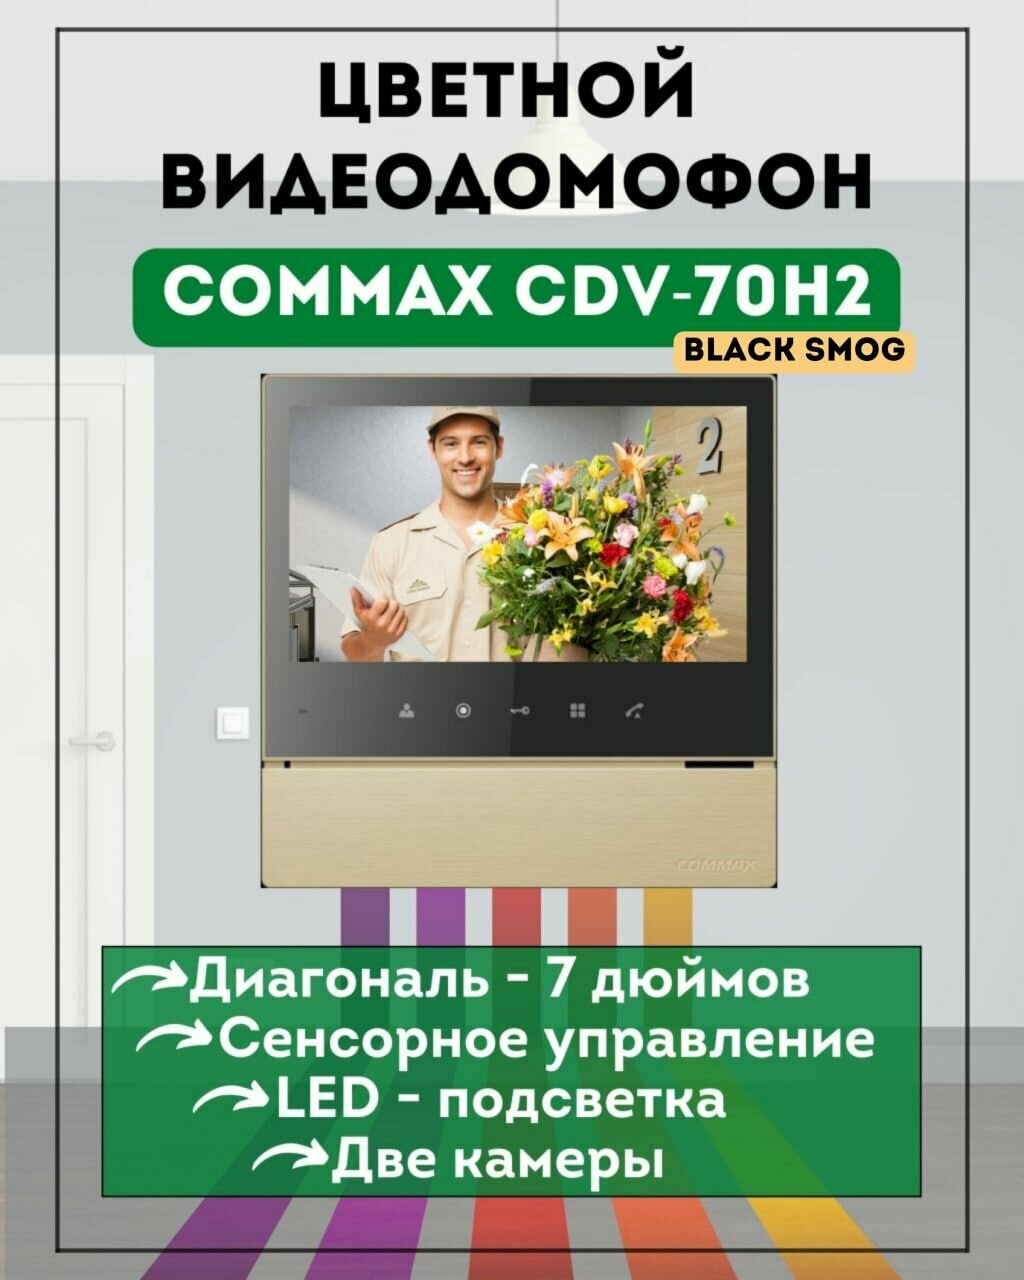 Видеодомофон цветной COMMAX CDV-70H2 золото Black Smog